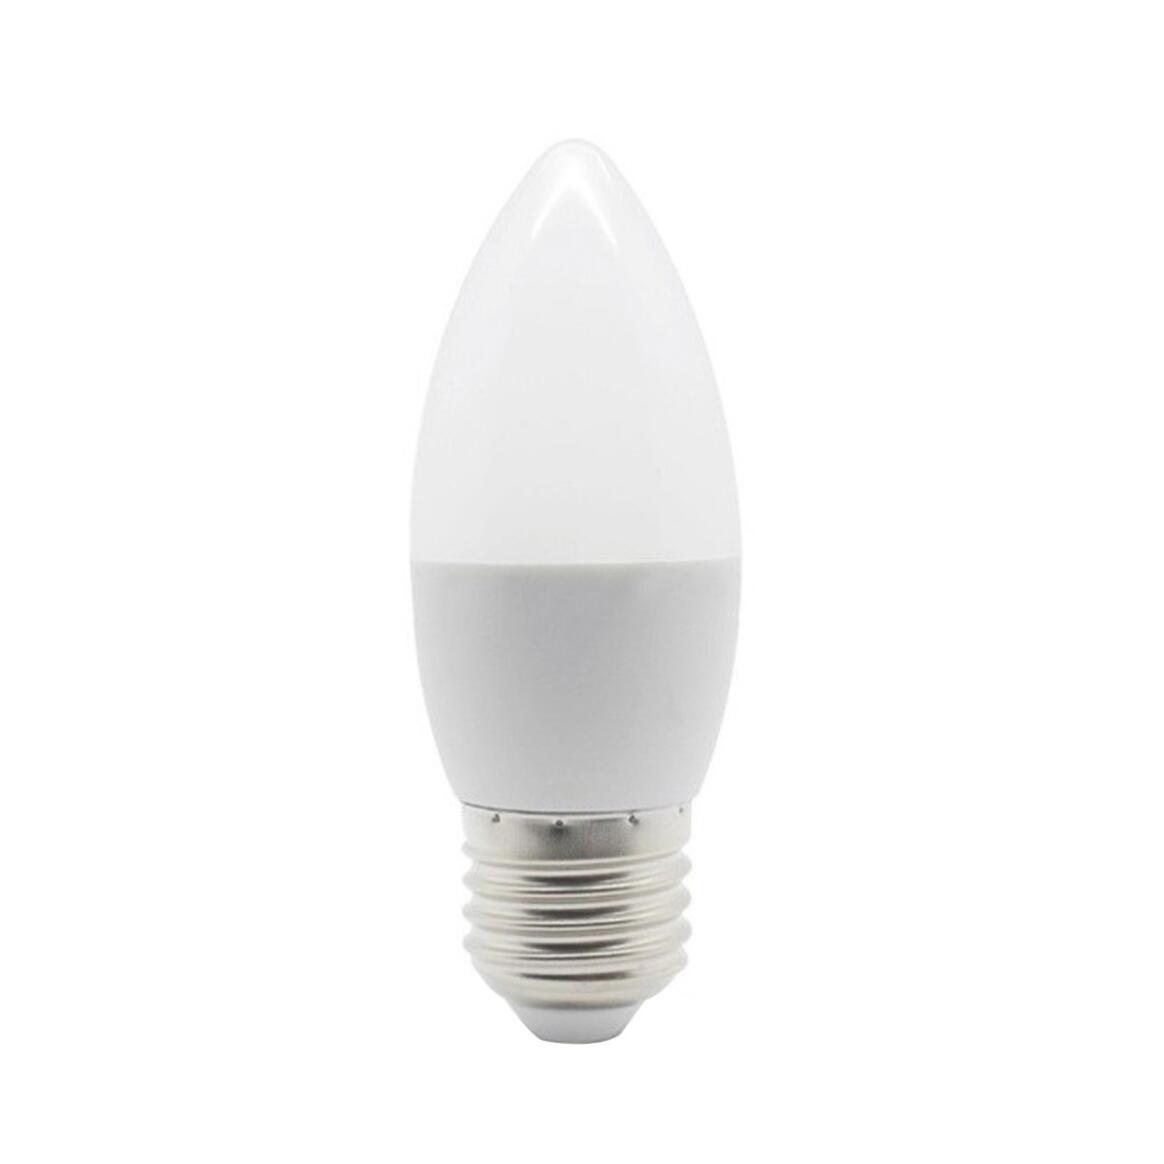 Ampoule LED blanc chaud variable d'intensité E27 5W 2700k 470lm 10cm main product image